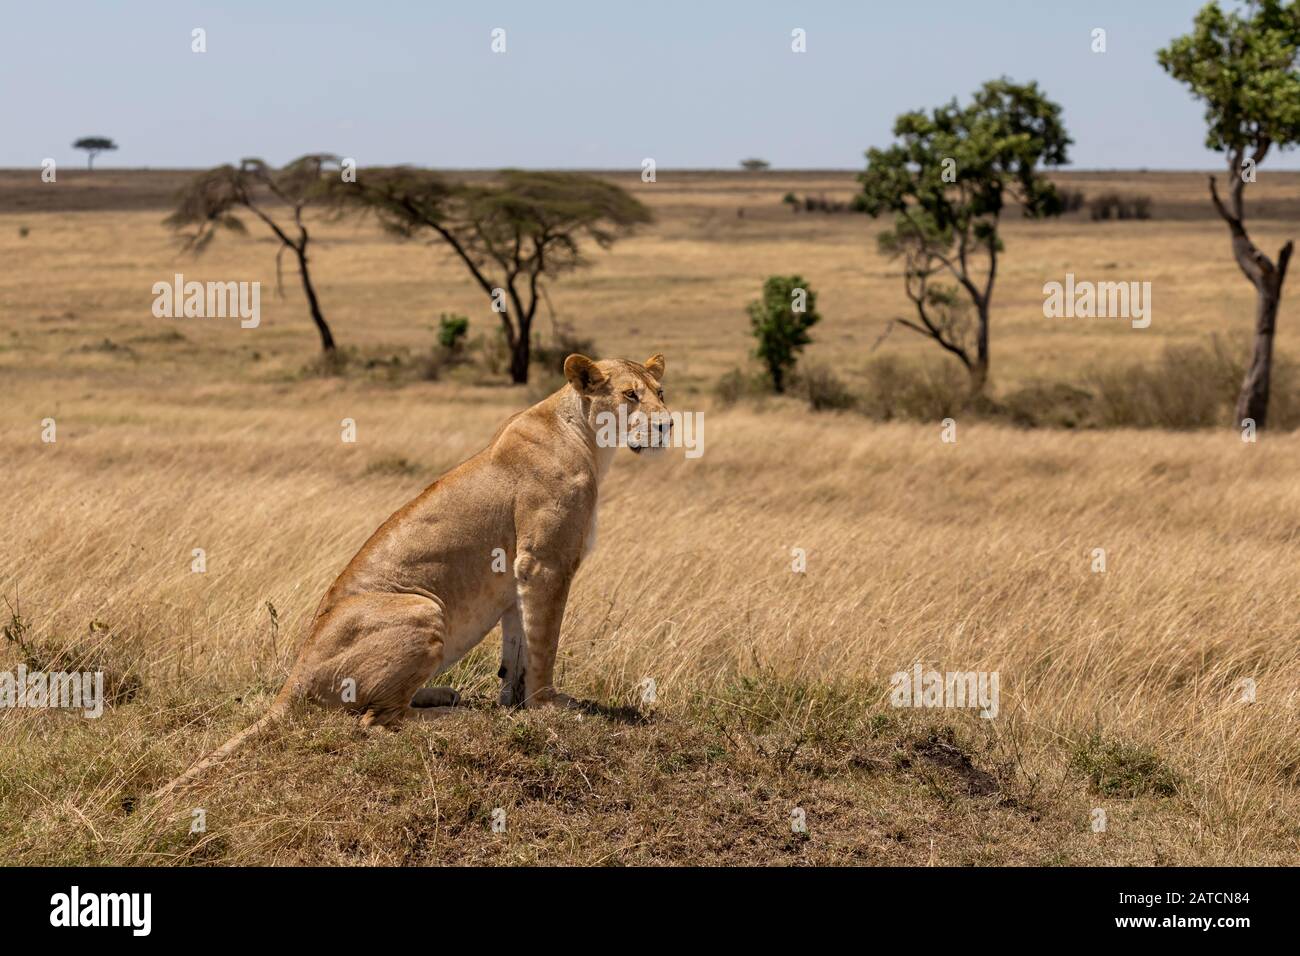 Lion africain (Panthera leo) femelle sur un chien termite à Mara North Conservancy, Kenya Banque D'Images